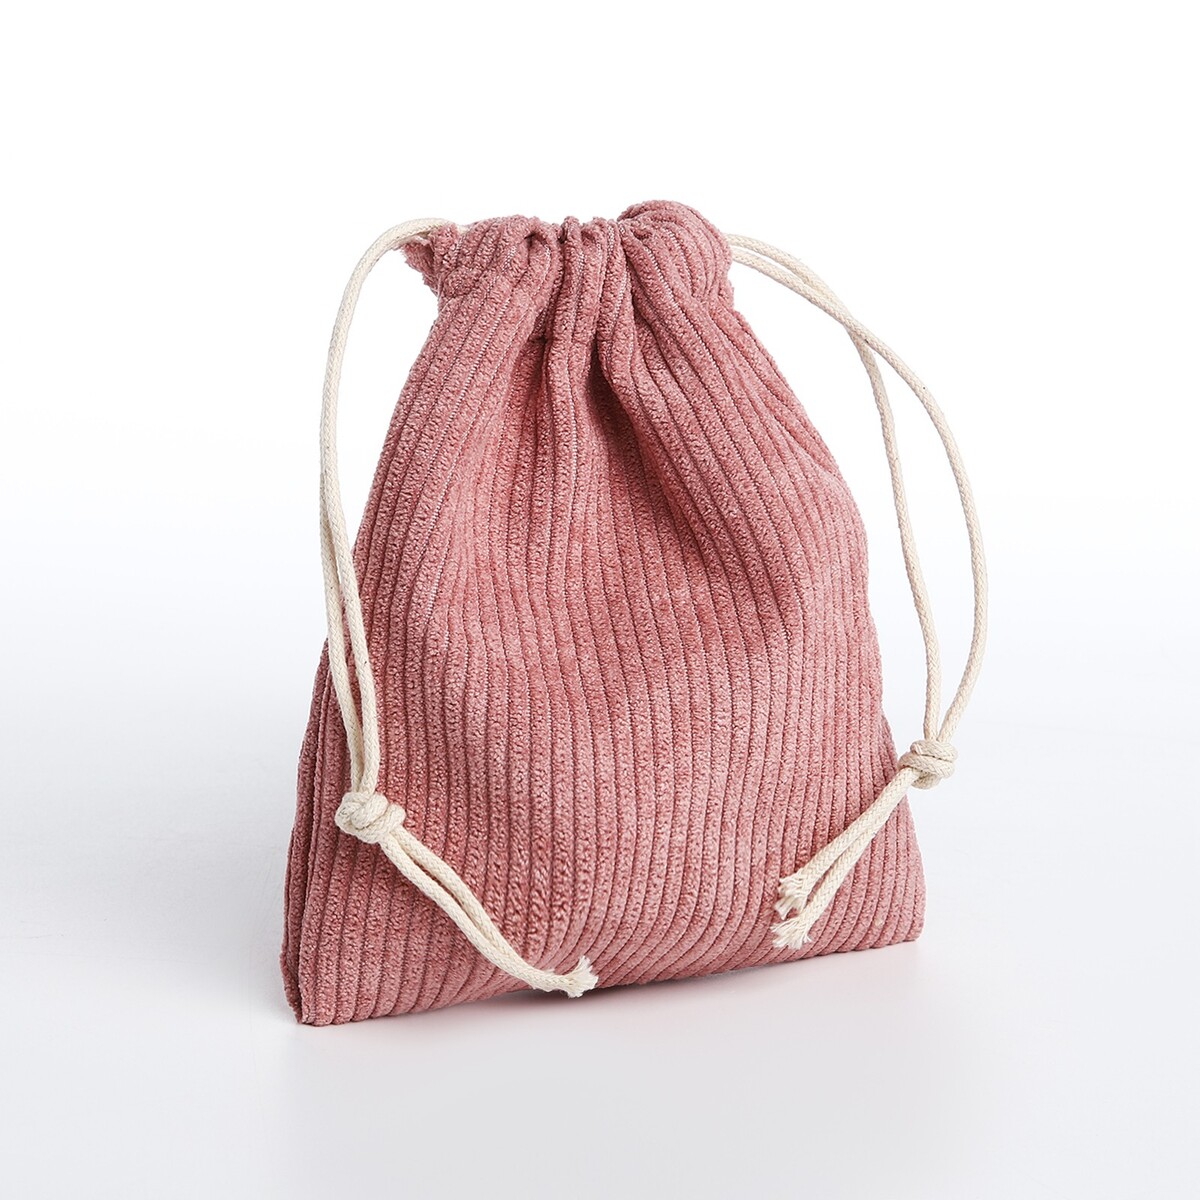 Косметичка - мешок с завязками, цвет розовый косметичка мешок с завязками горчичный